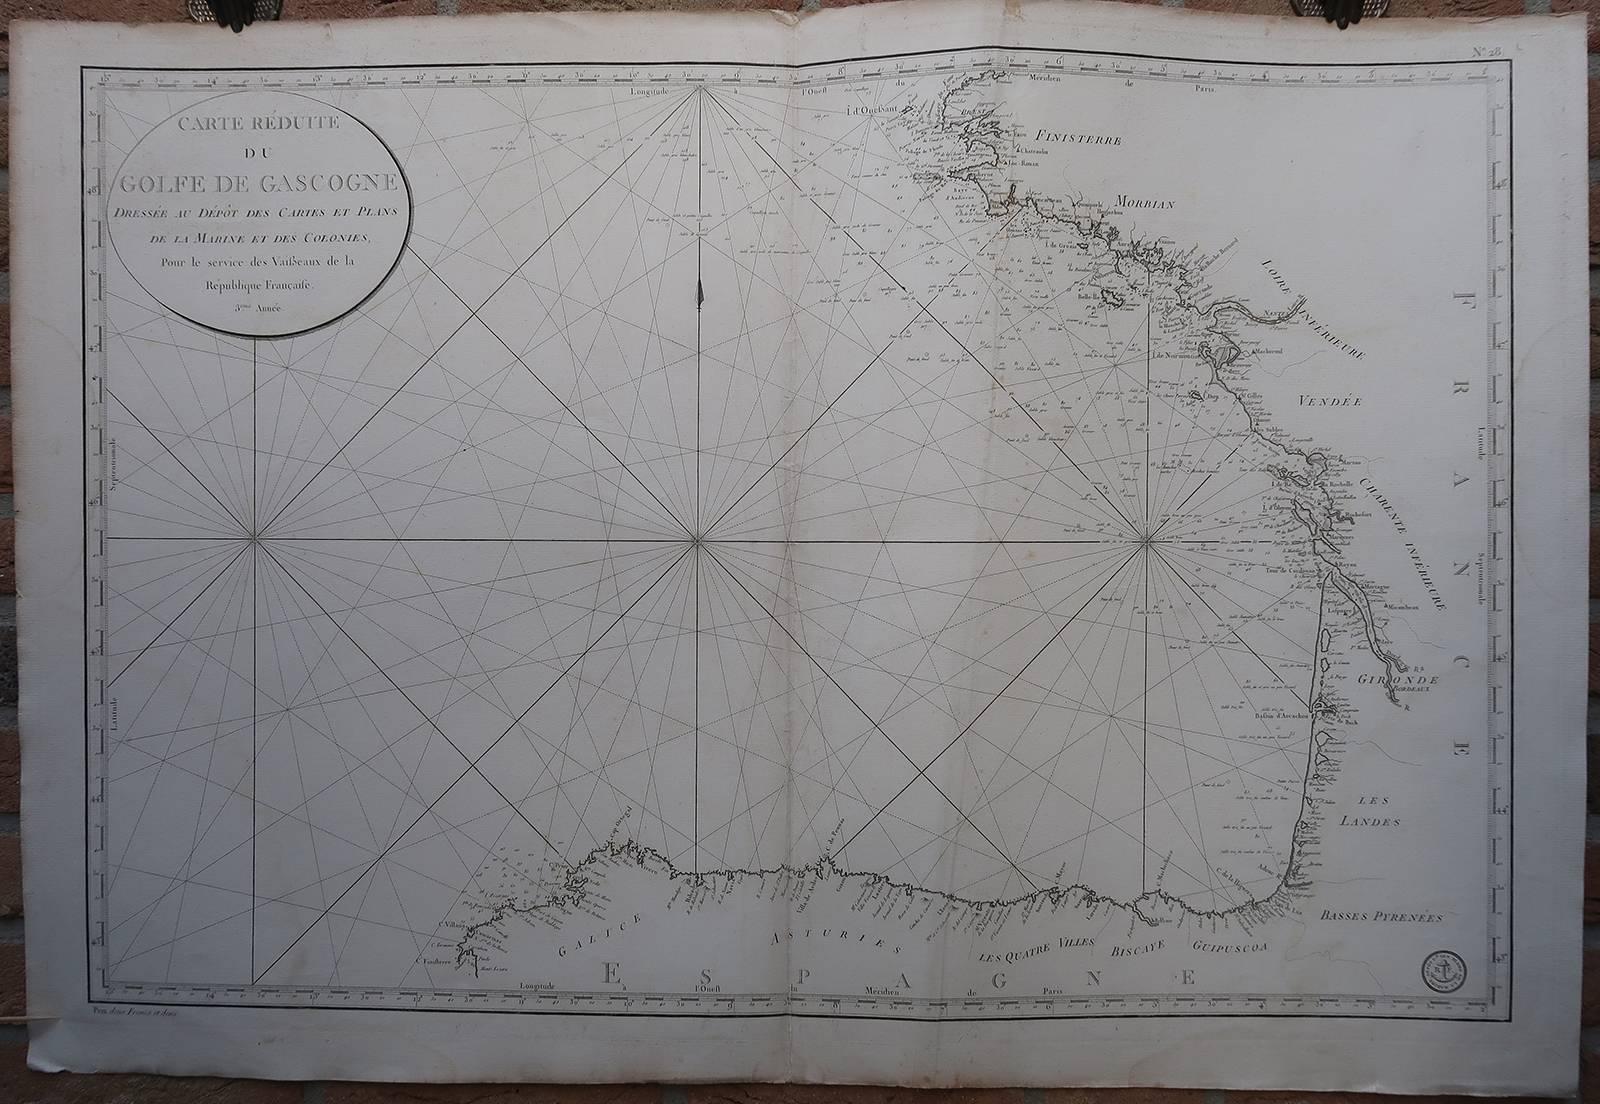 Unknown Print - No. 28. Carte reduite du Golfe de Gascoigne [...].